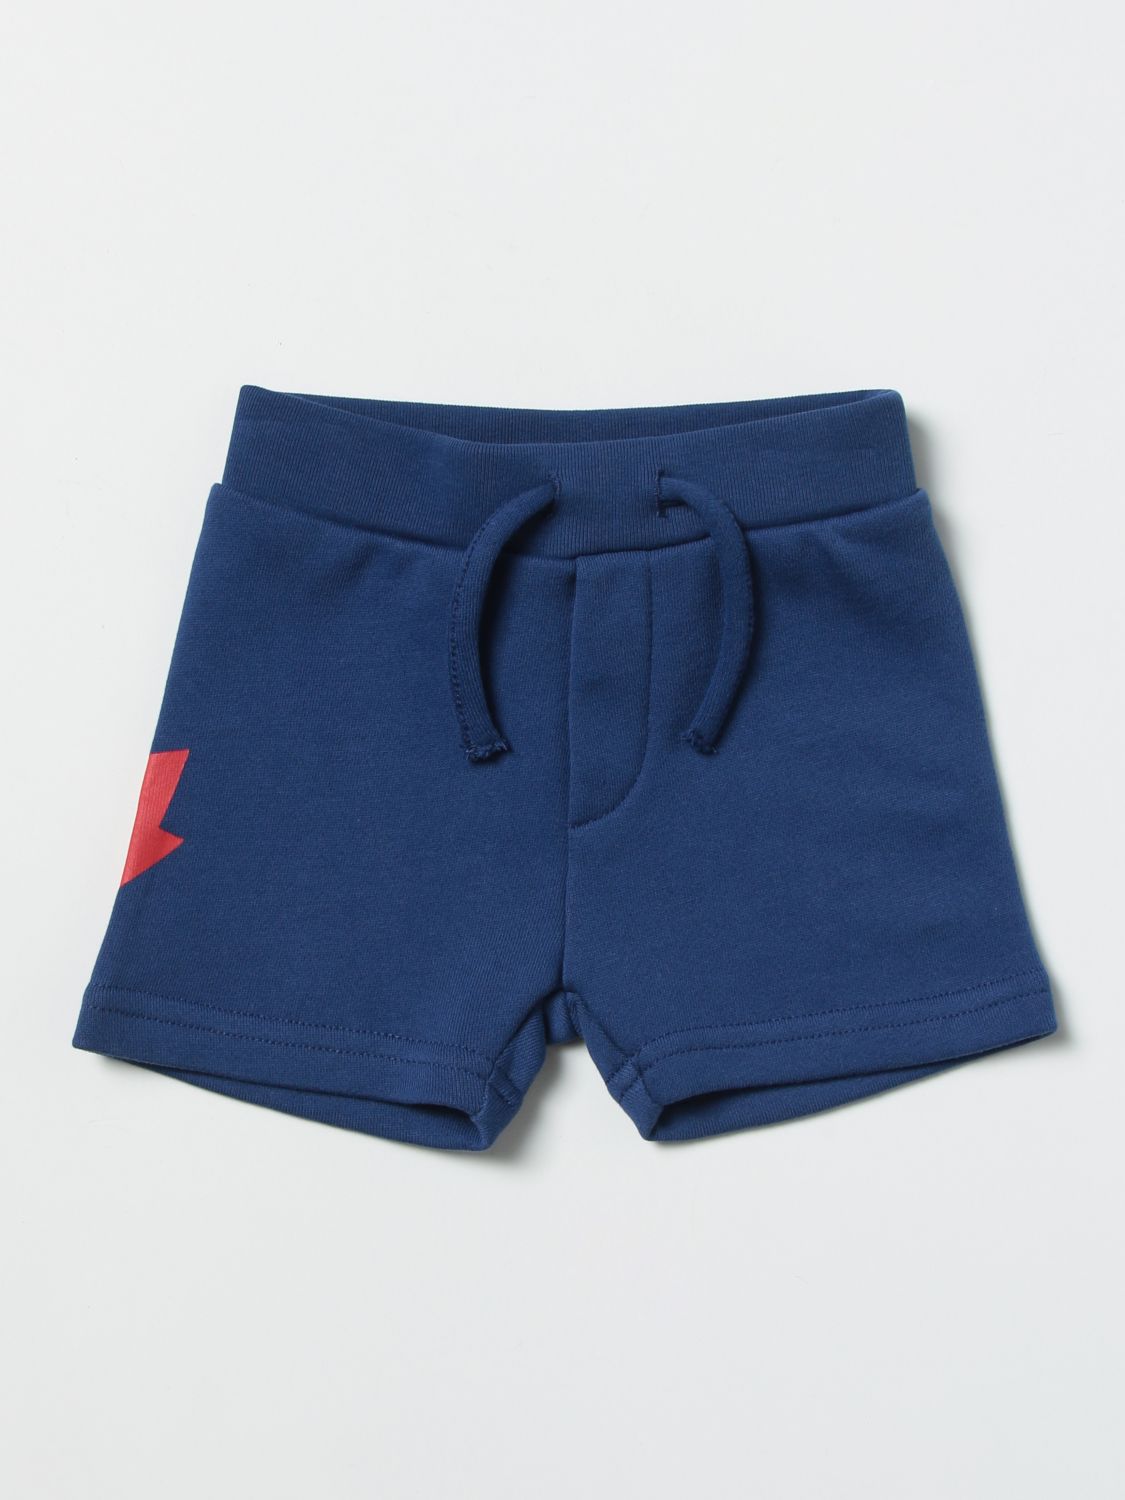 Pantalones cortos Dsquared2 Junior: Pantalones cortos Dsquared2 Junior para bebé azul oscuro 1